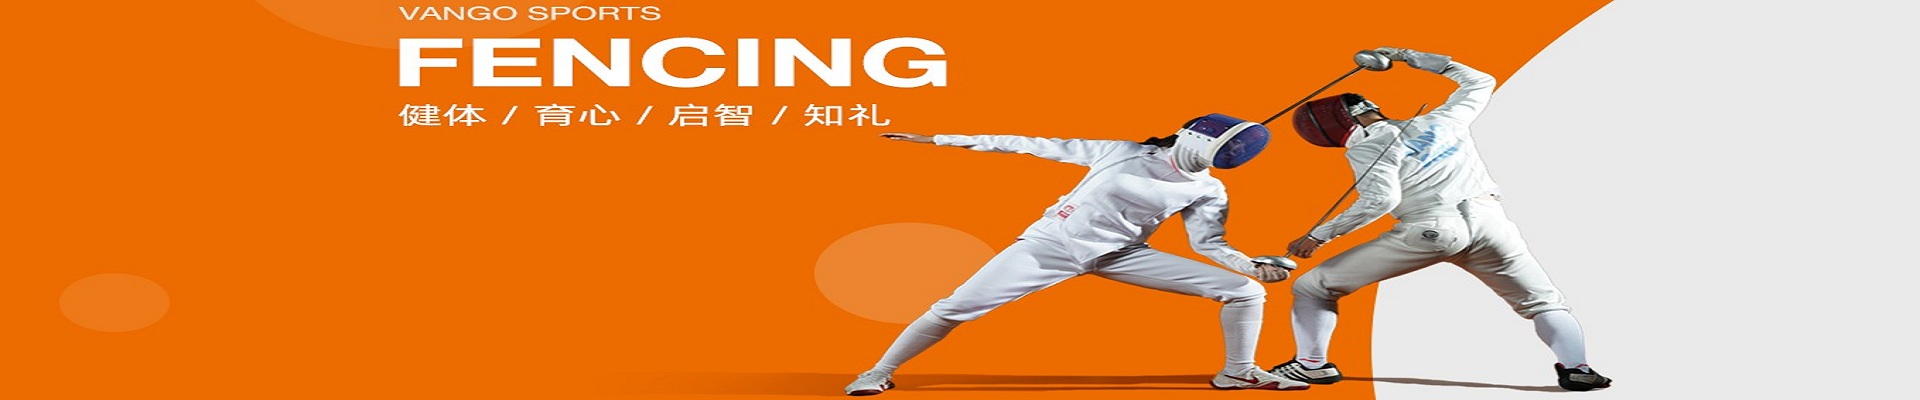 杭州万国体育国际击剑中心